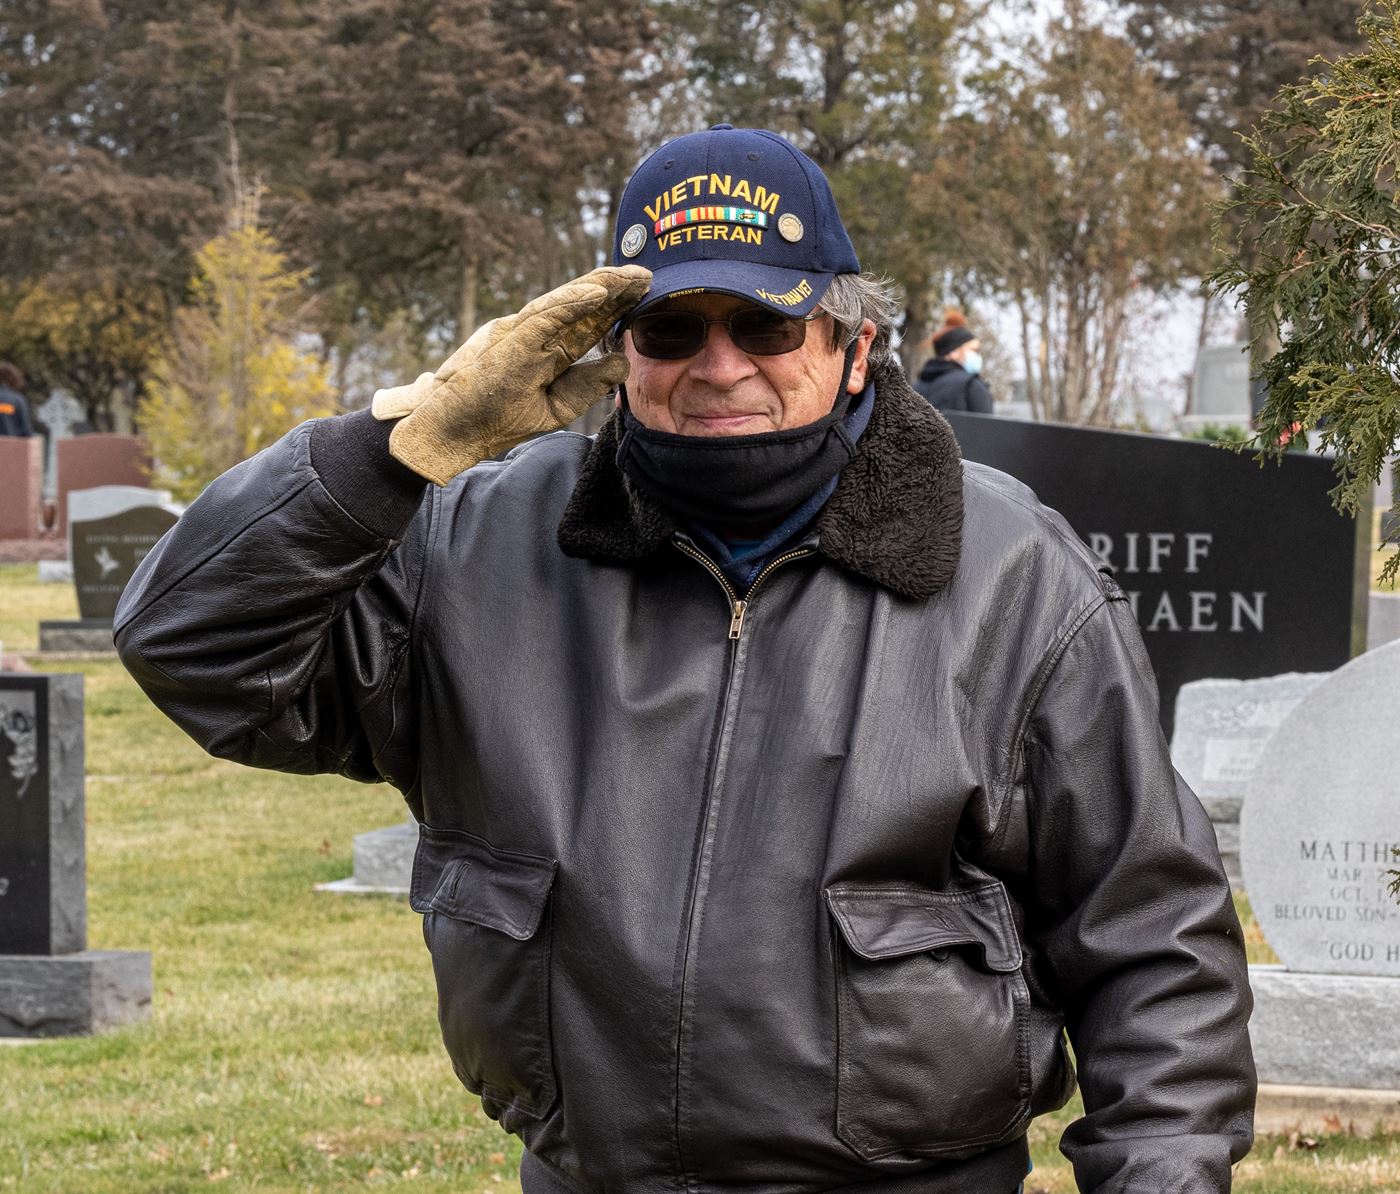 Honoring ALL Veterans [cr: Jim Frazier]